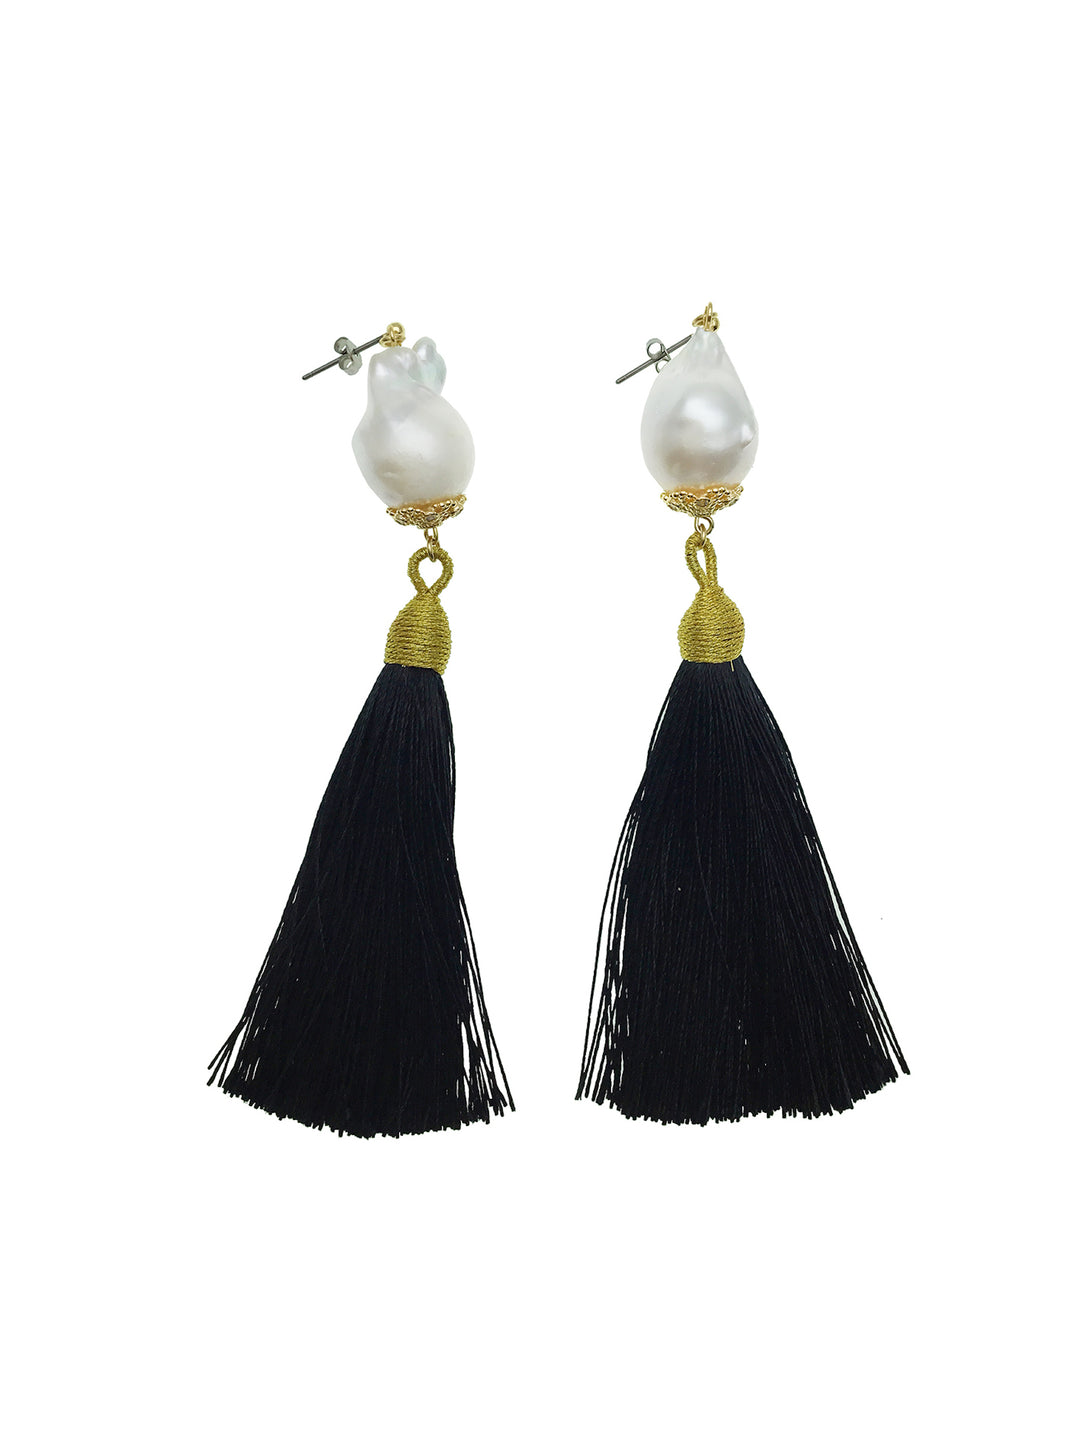 Baroque Pearl With Black Tassel Earrings CE041 - FARRA